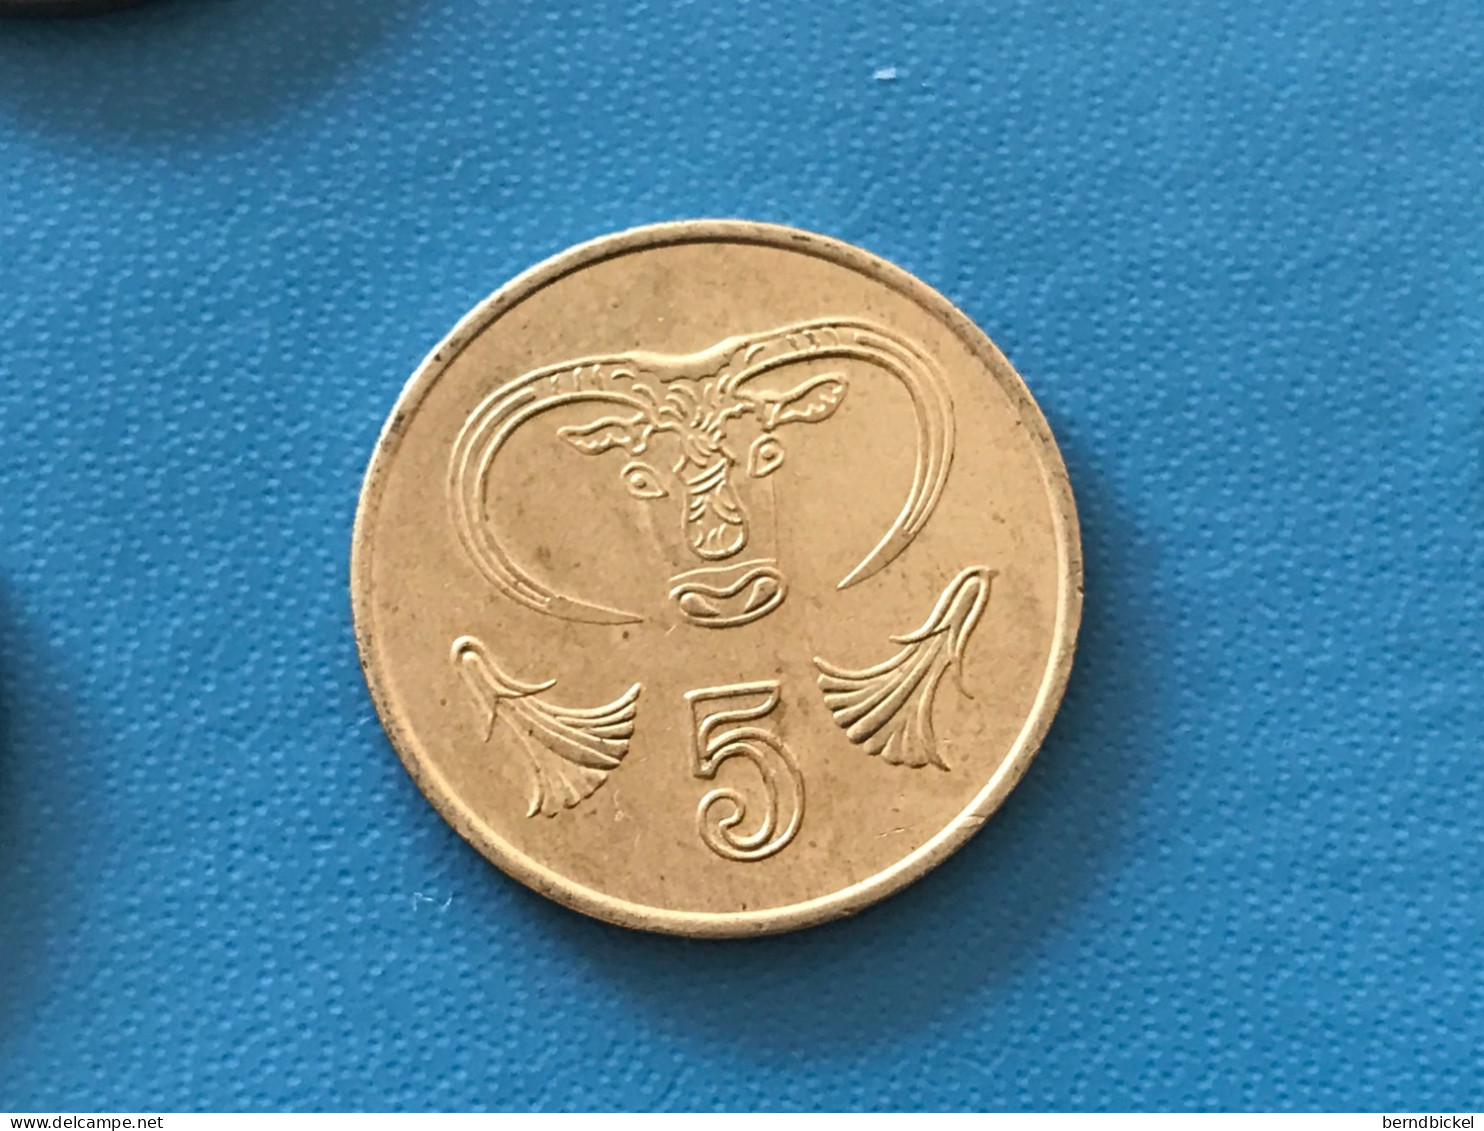 Münze Münzen Umlaufmünze Zypern 5 Cent 1993 - Cyprus